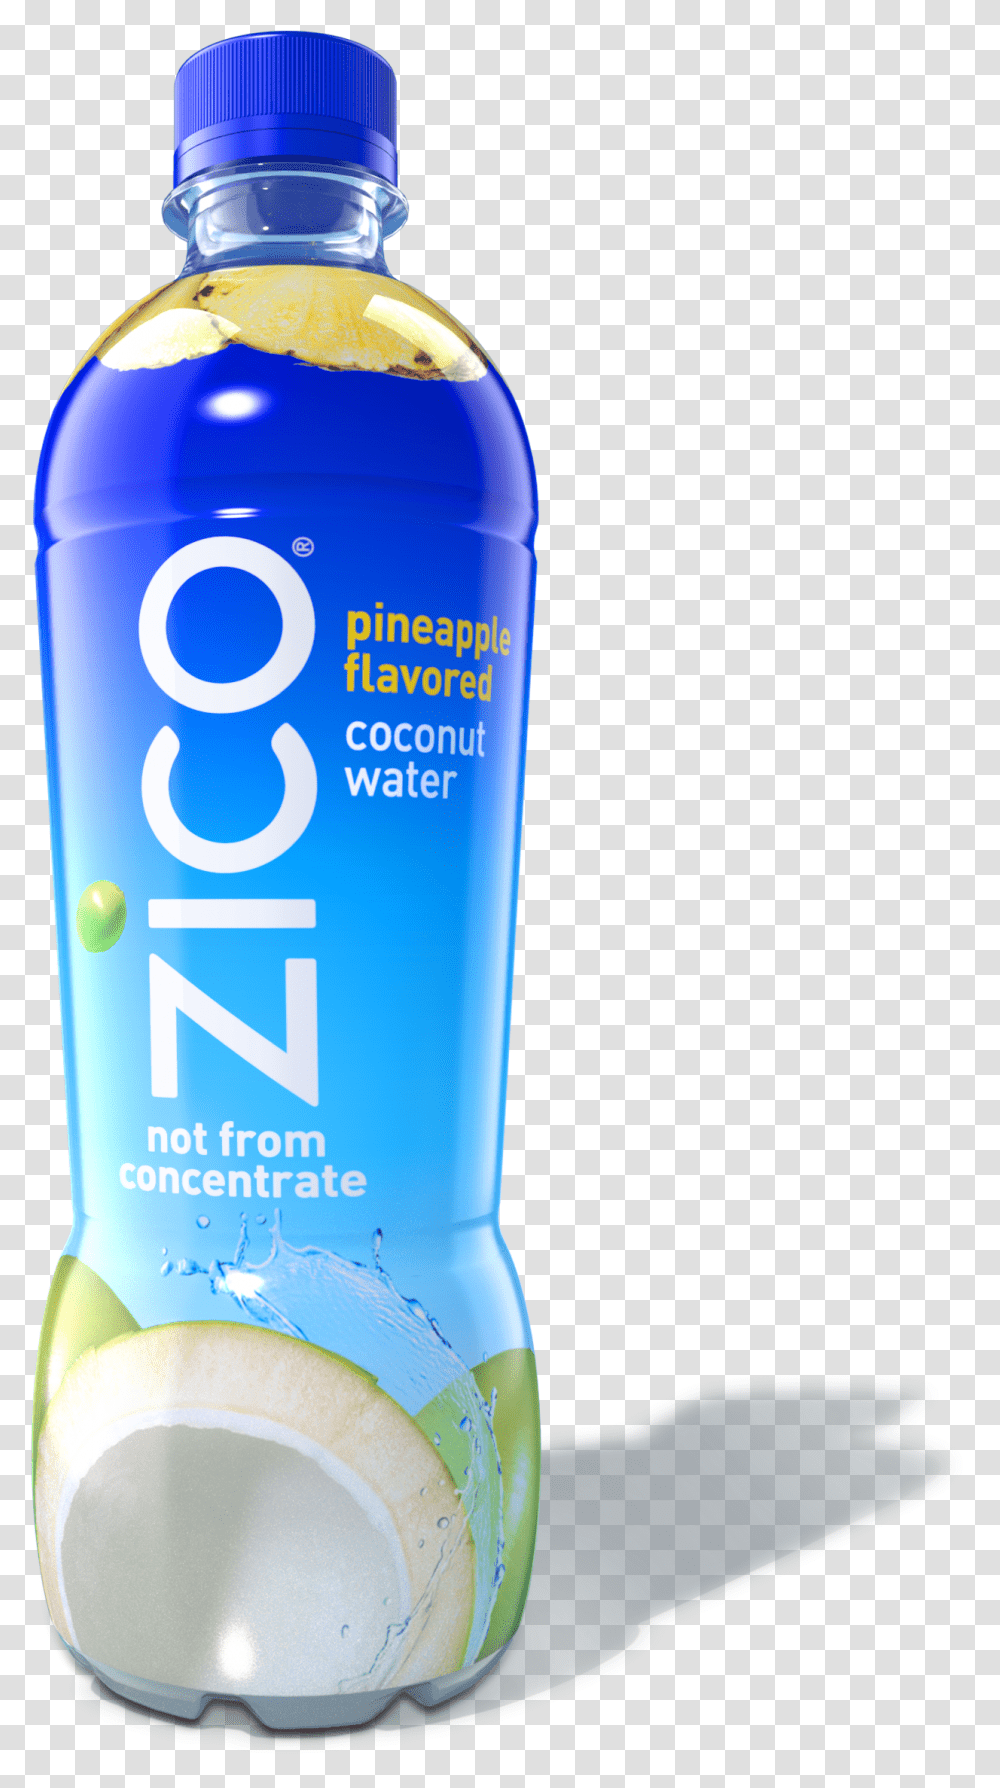 Zico Coconut Water Natural Zico Coconut Water, Bottle, Milk, Beverage, Drink Transparent Png